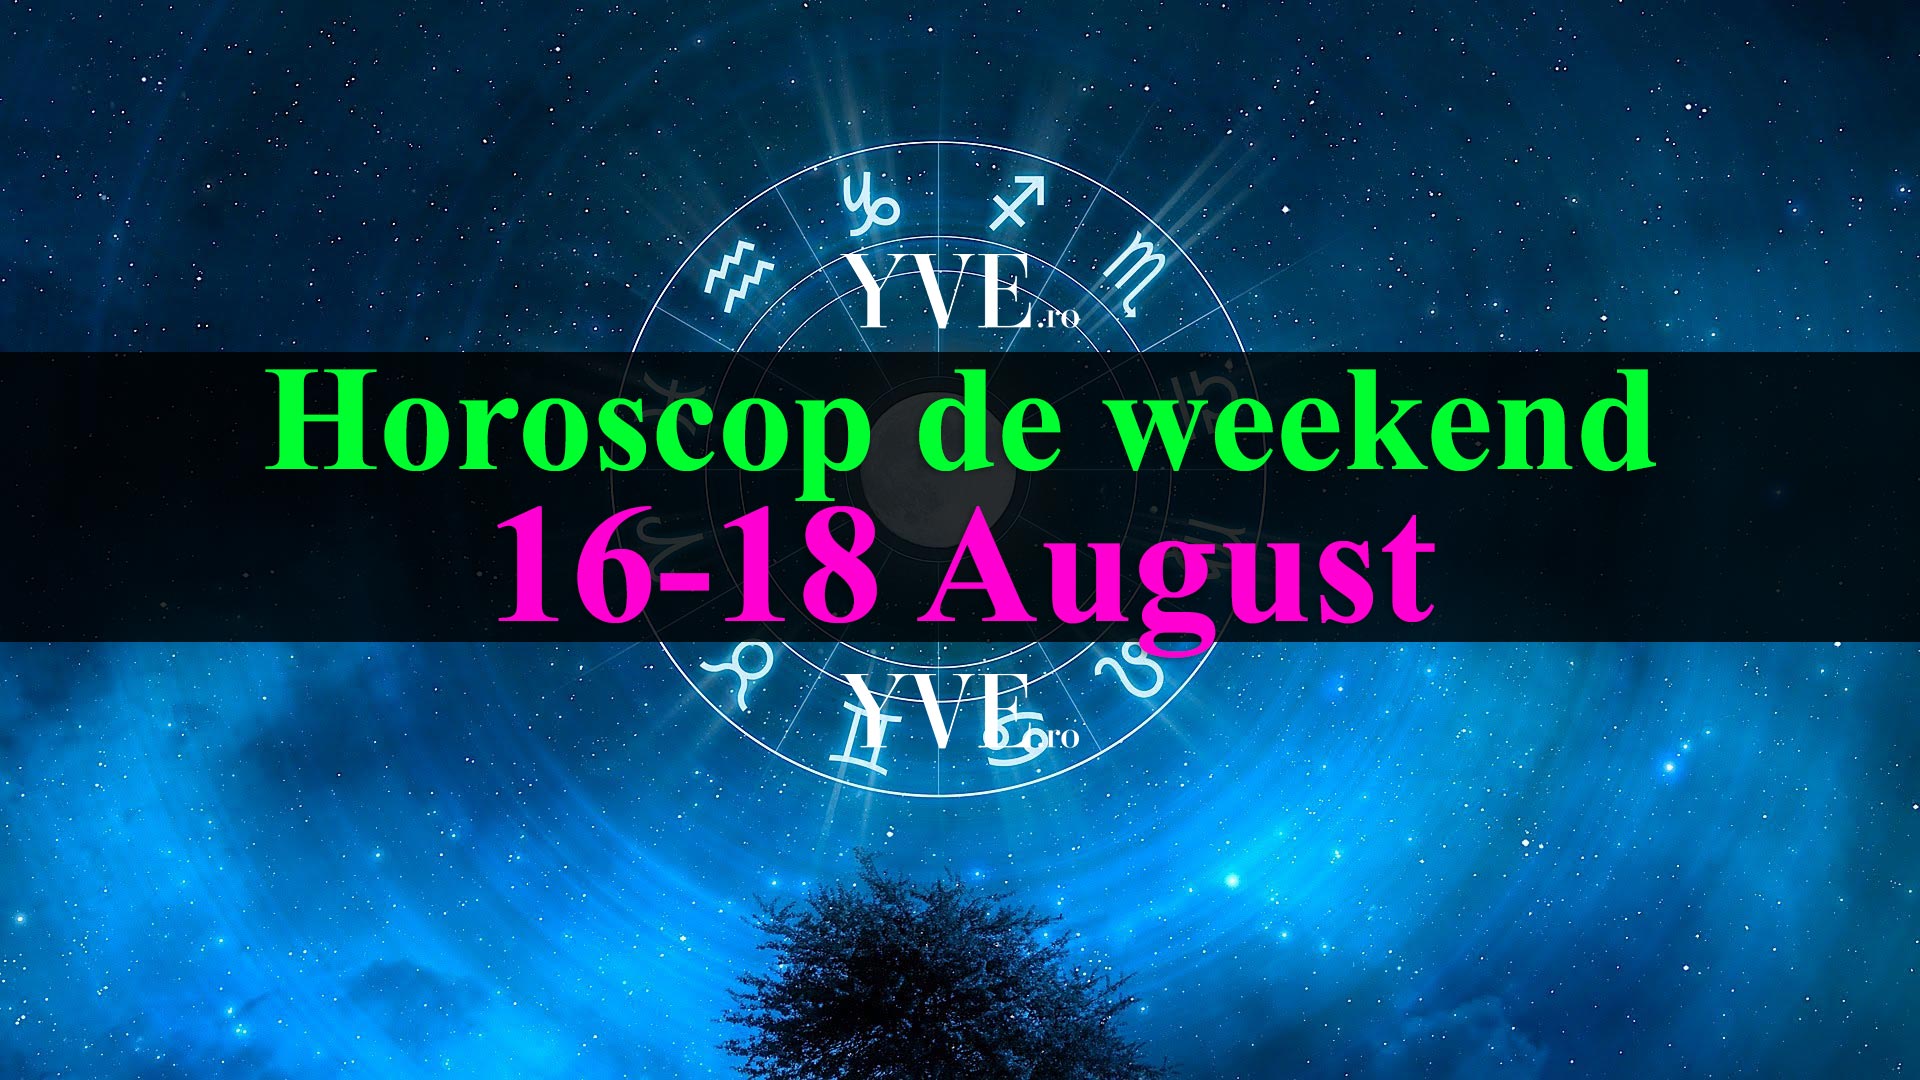 Horoscop de weekend 16-18 August 2019